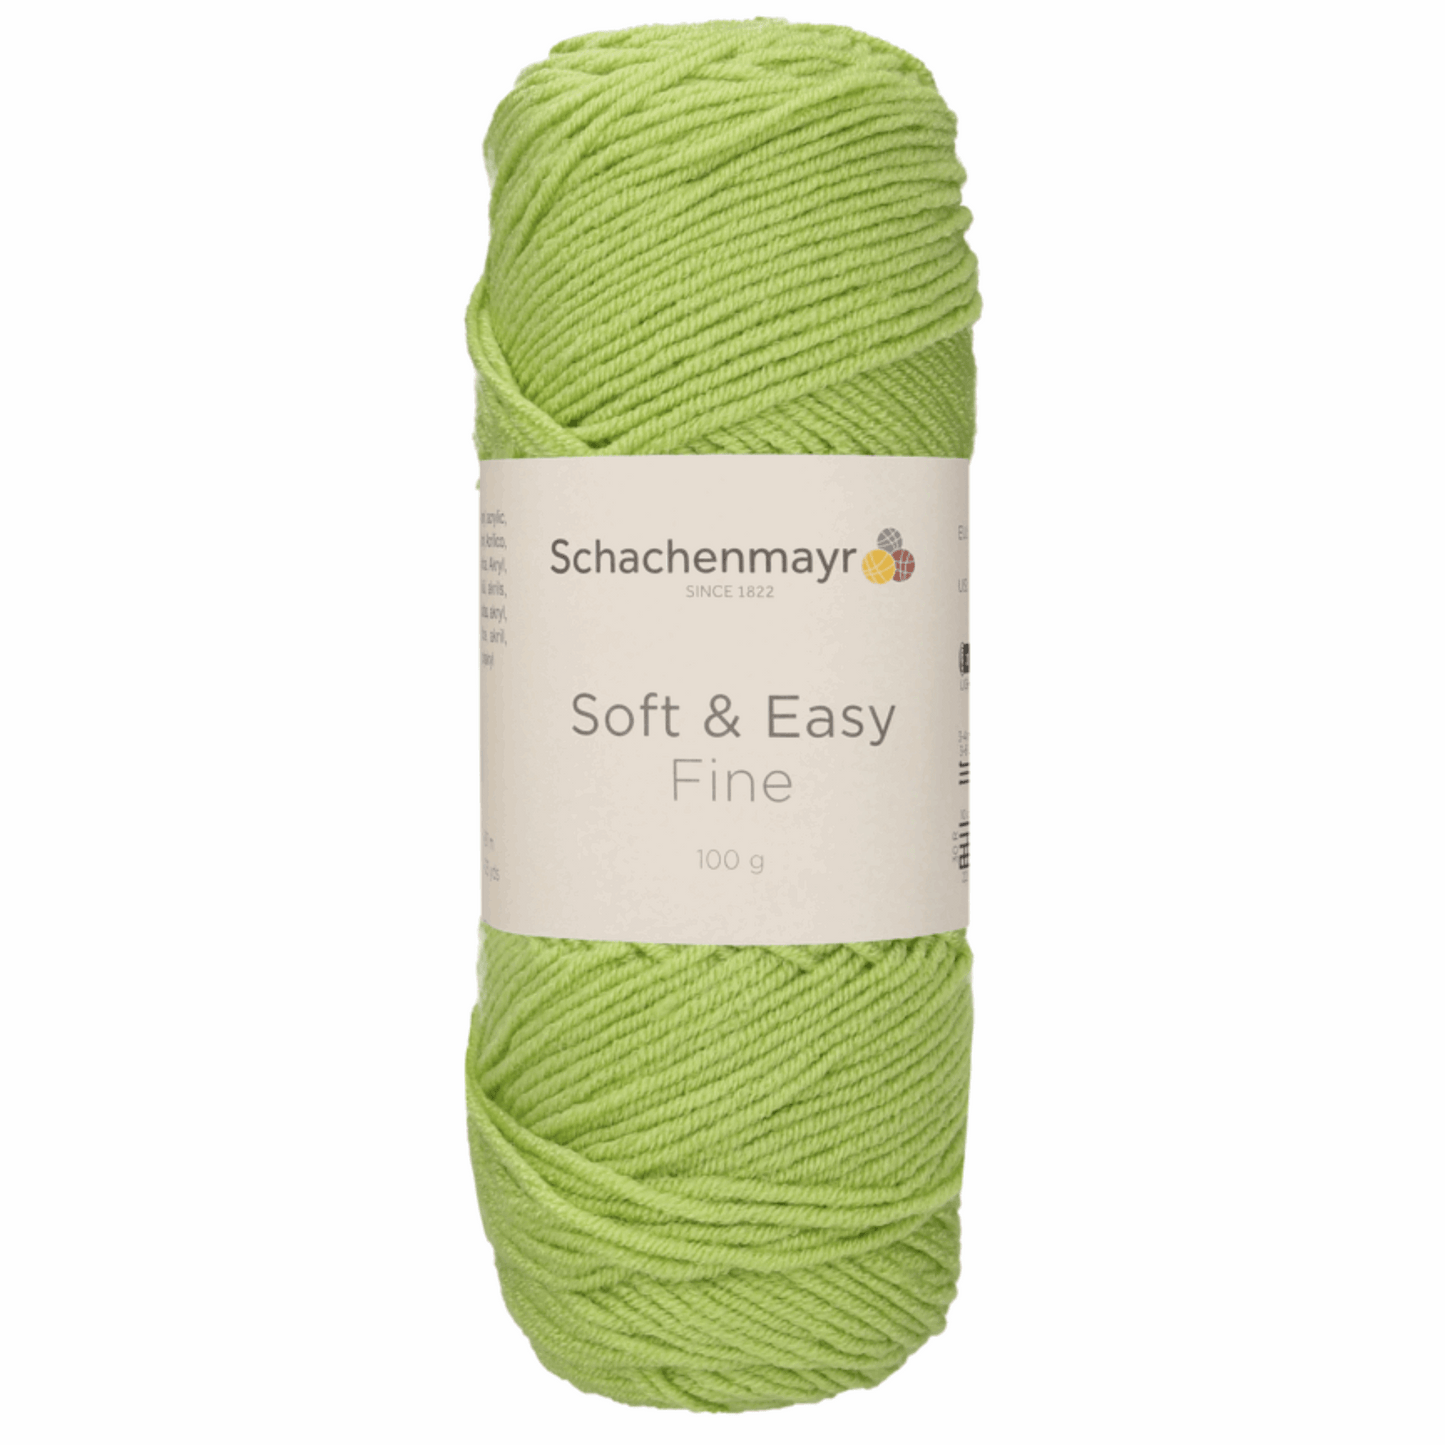 Schachenmayr Soft & Easy Fine 100g, 90402, Farbe Birke 71